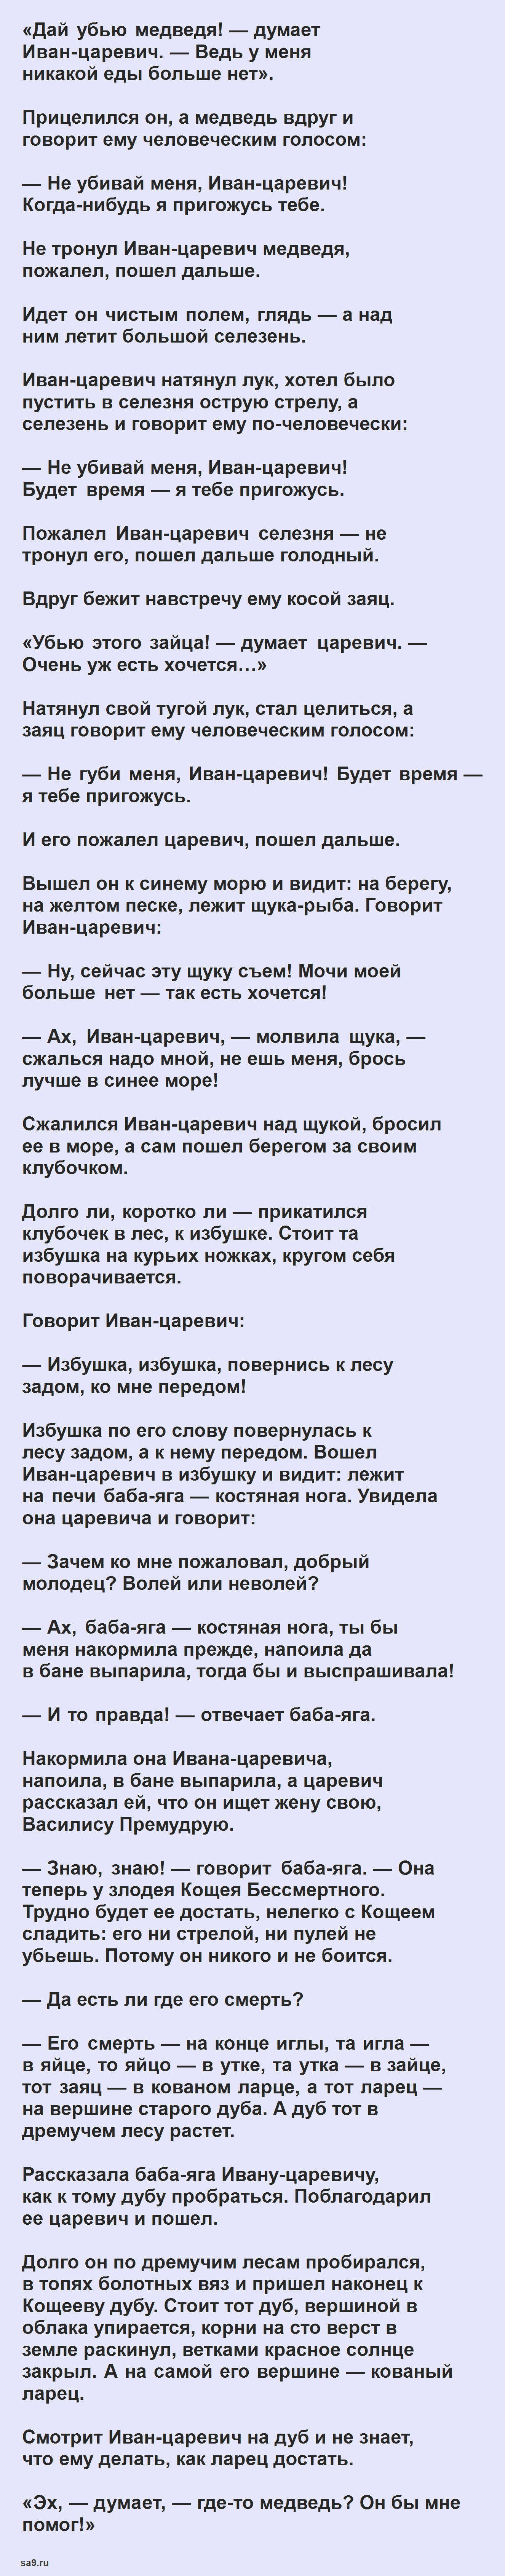 Царевна лягушка - русская народная сказка